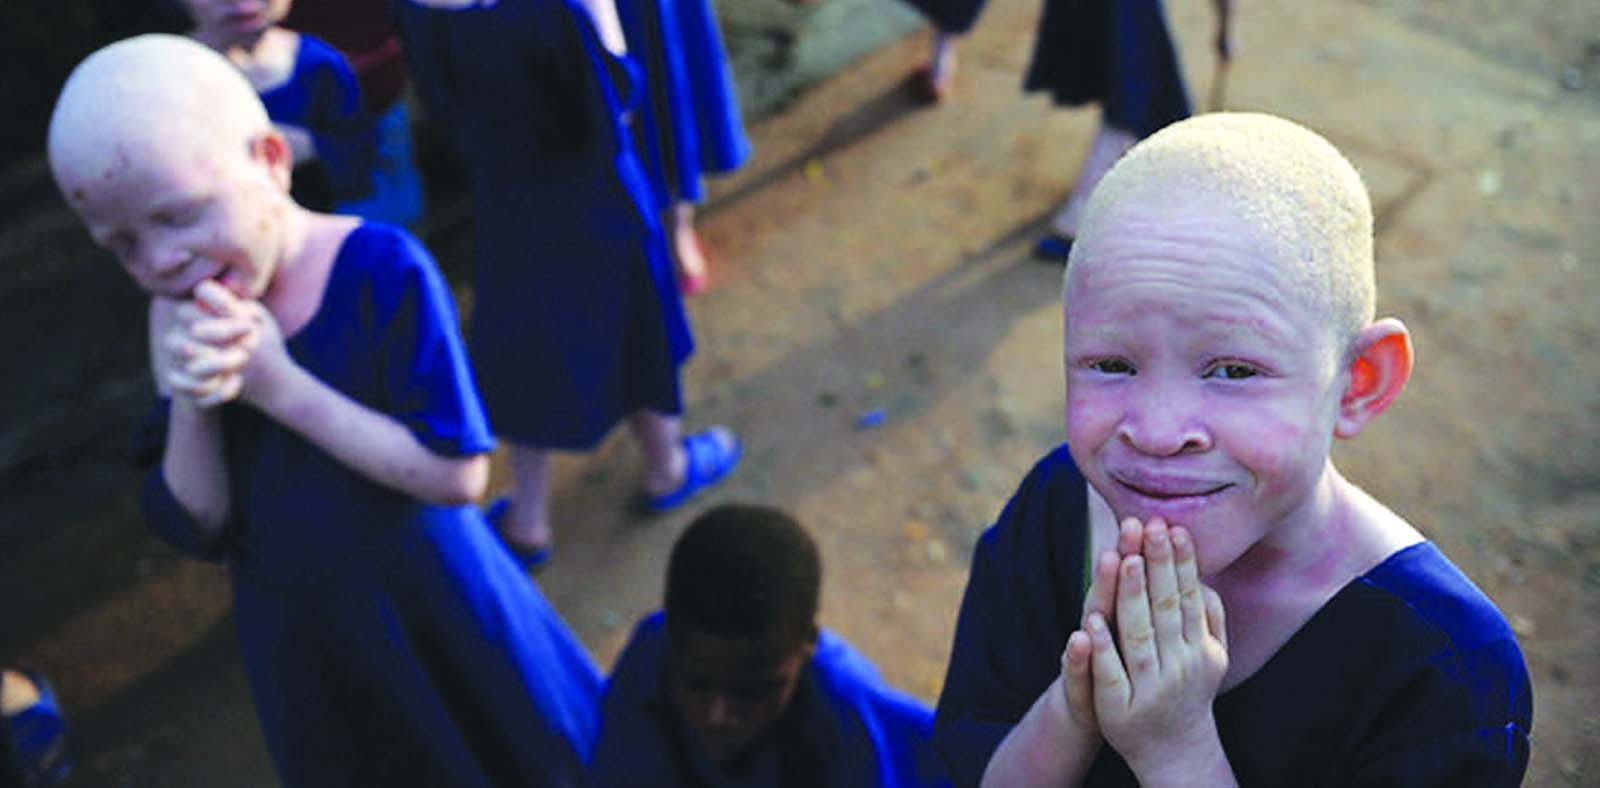 albinisim in africa_blog.swaliafrica.com _